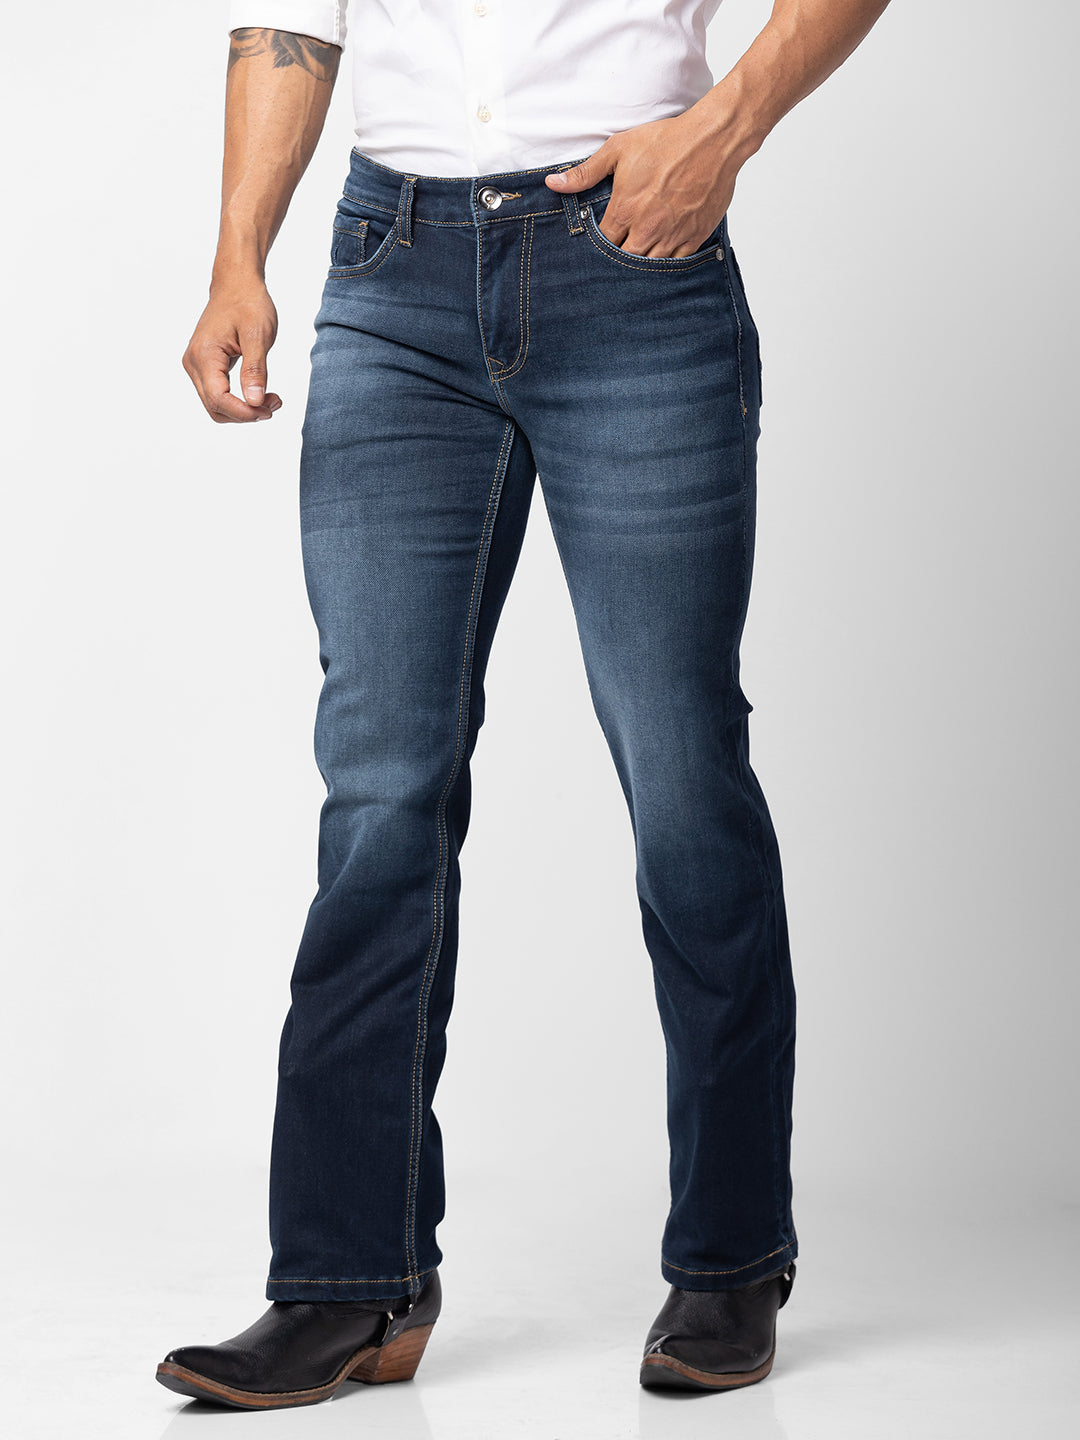 Indigo Grey Bootcut Jeans for Men